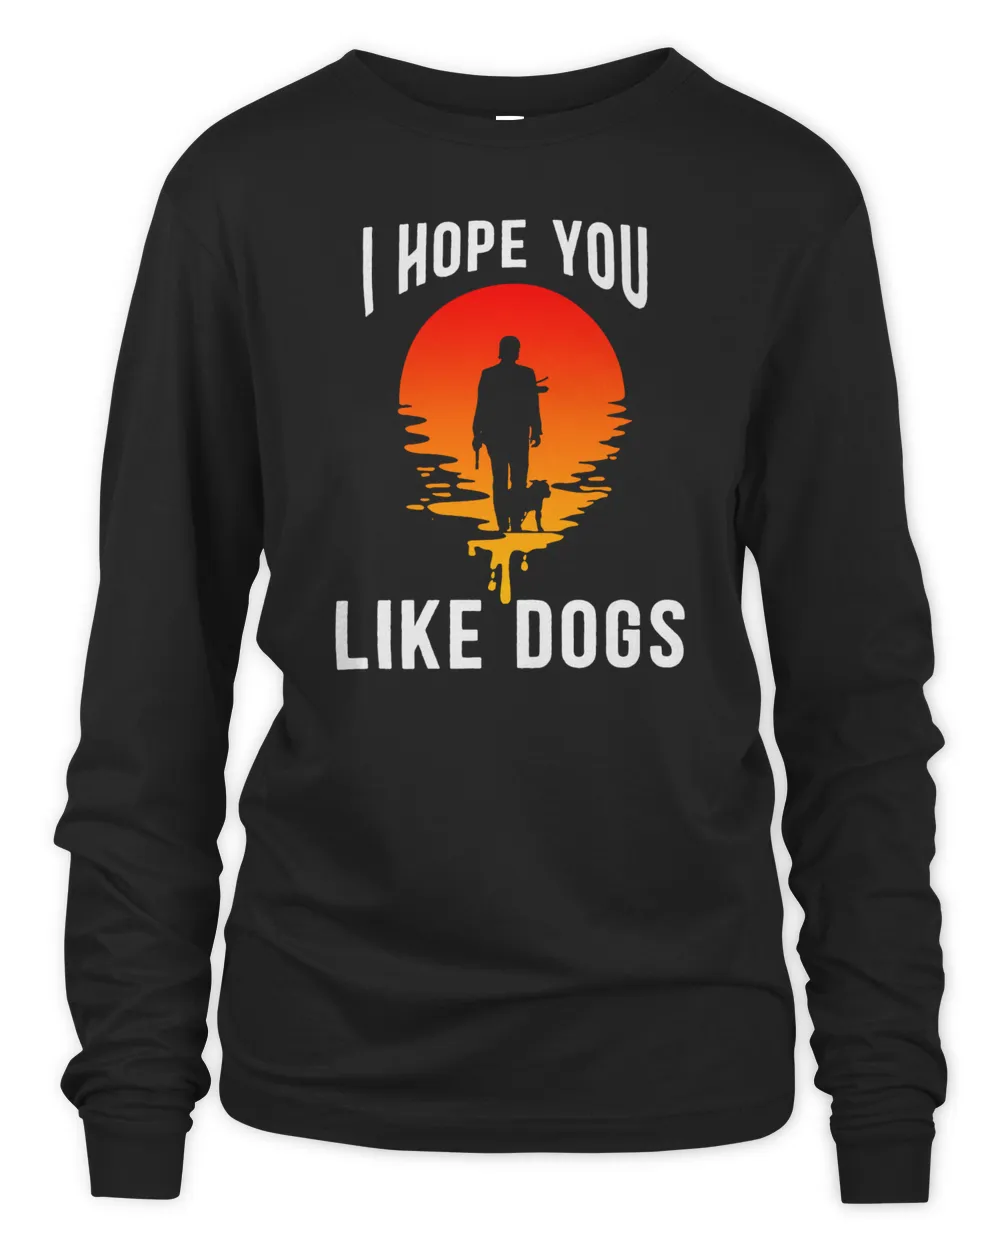 I hope you like dogs